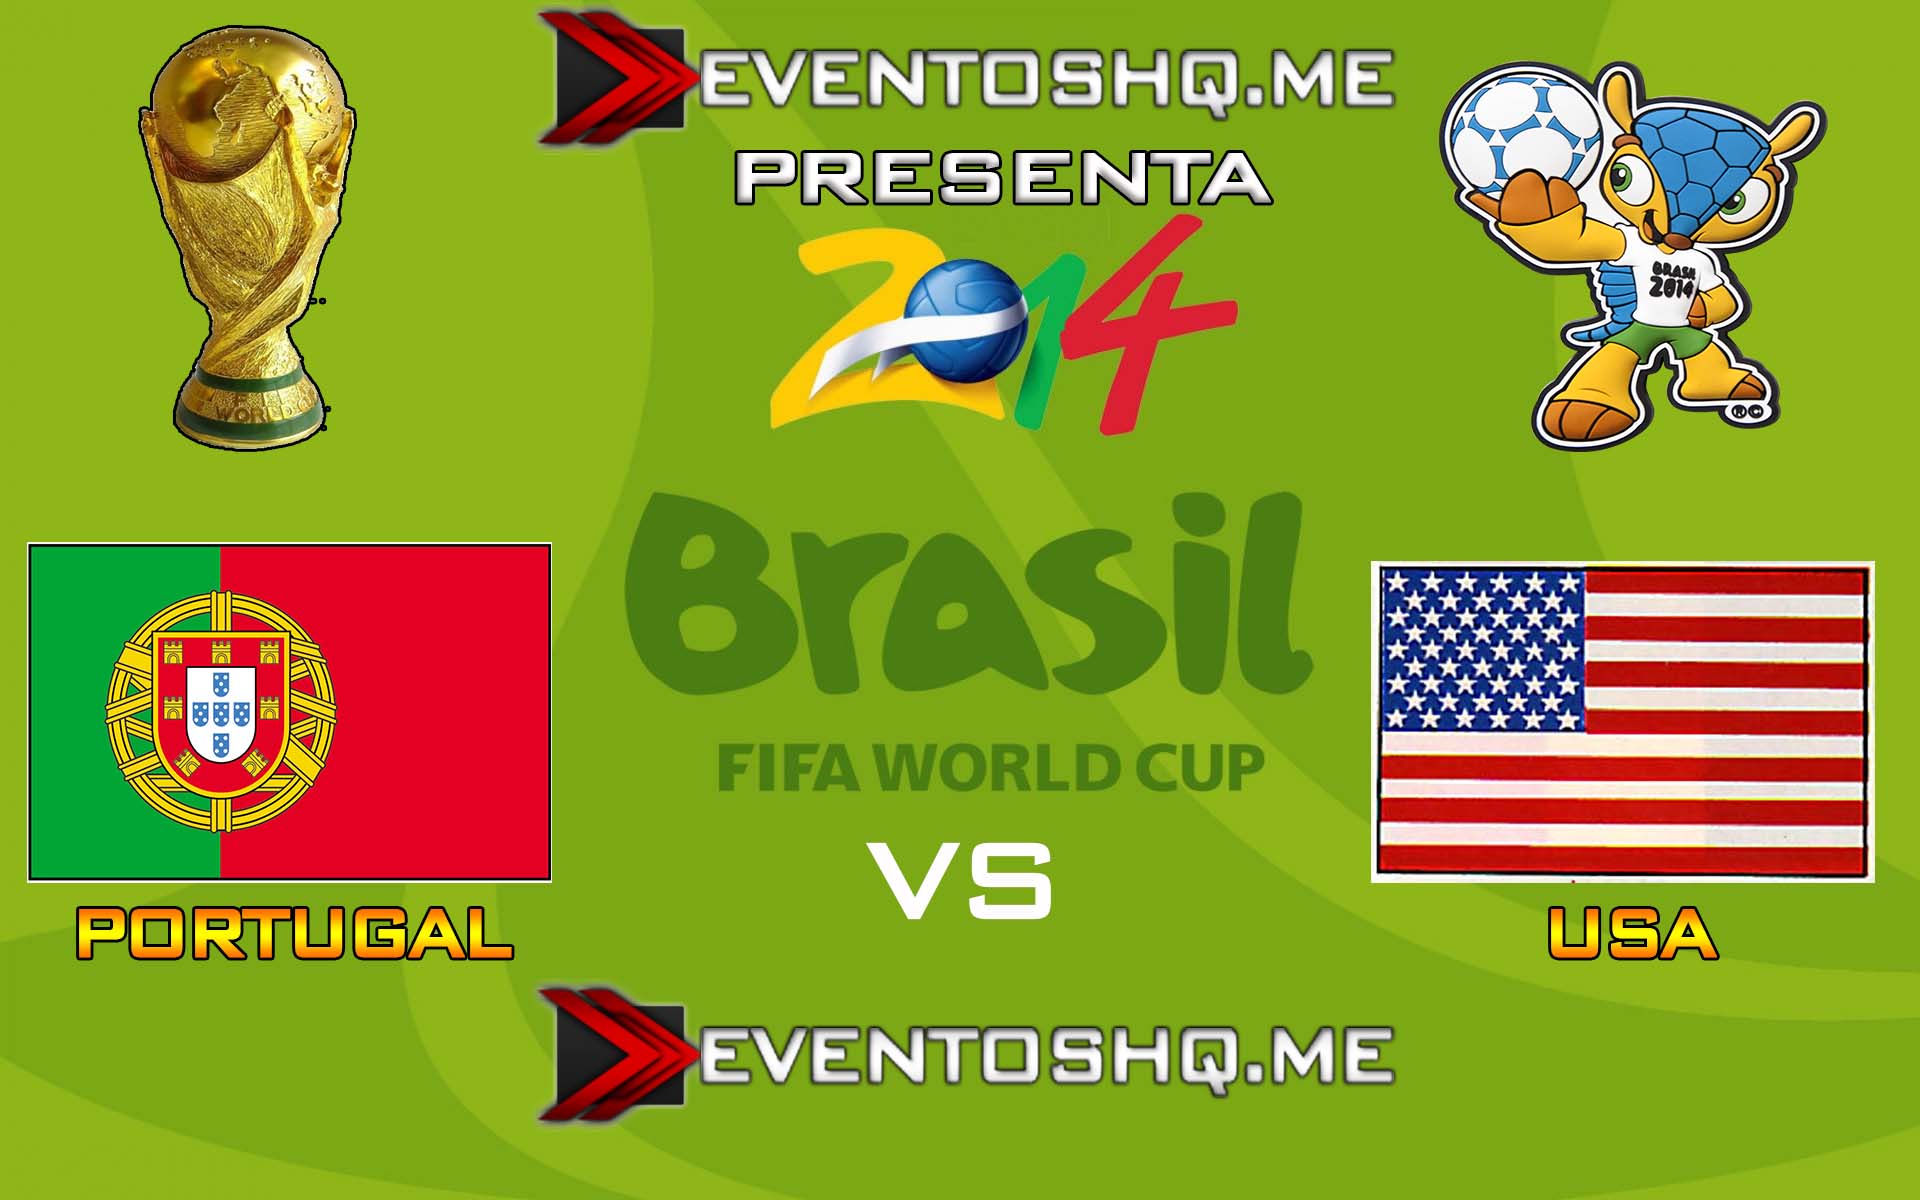 Ver en Vivo Portugal vs USA Mundial Brasil 2014 www.eventoshq.me